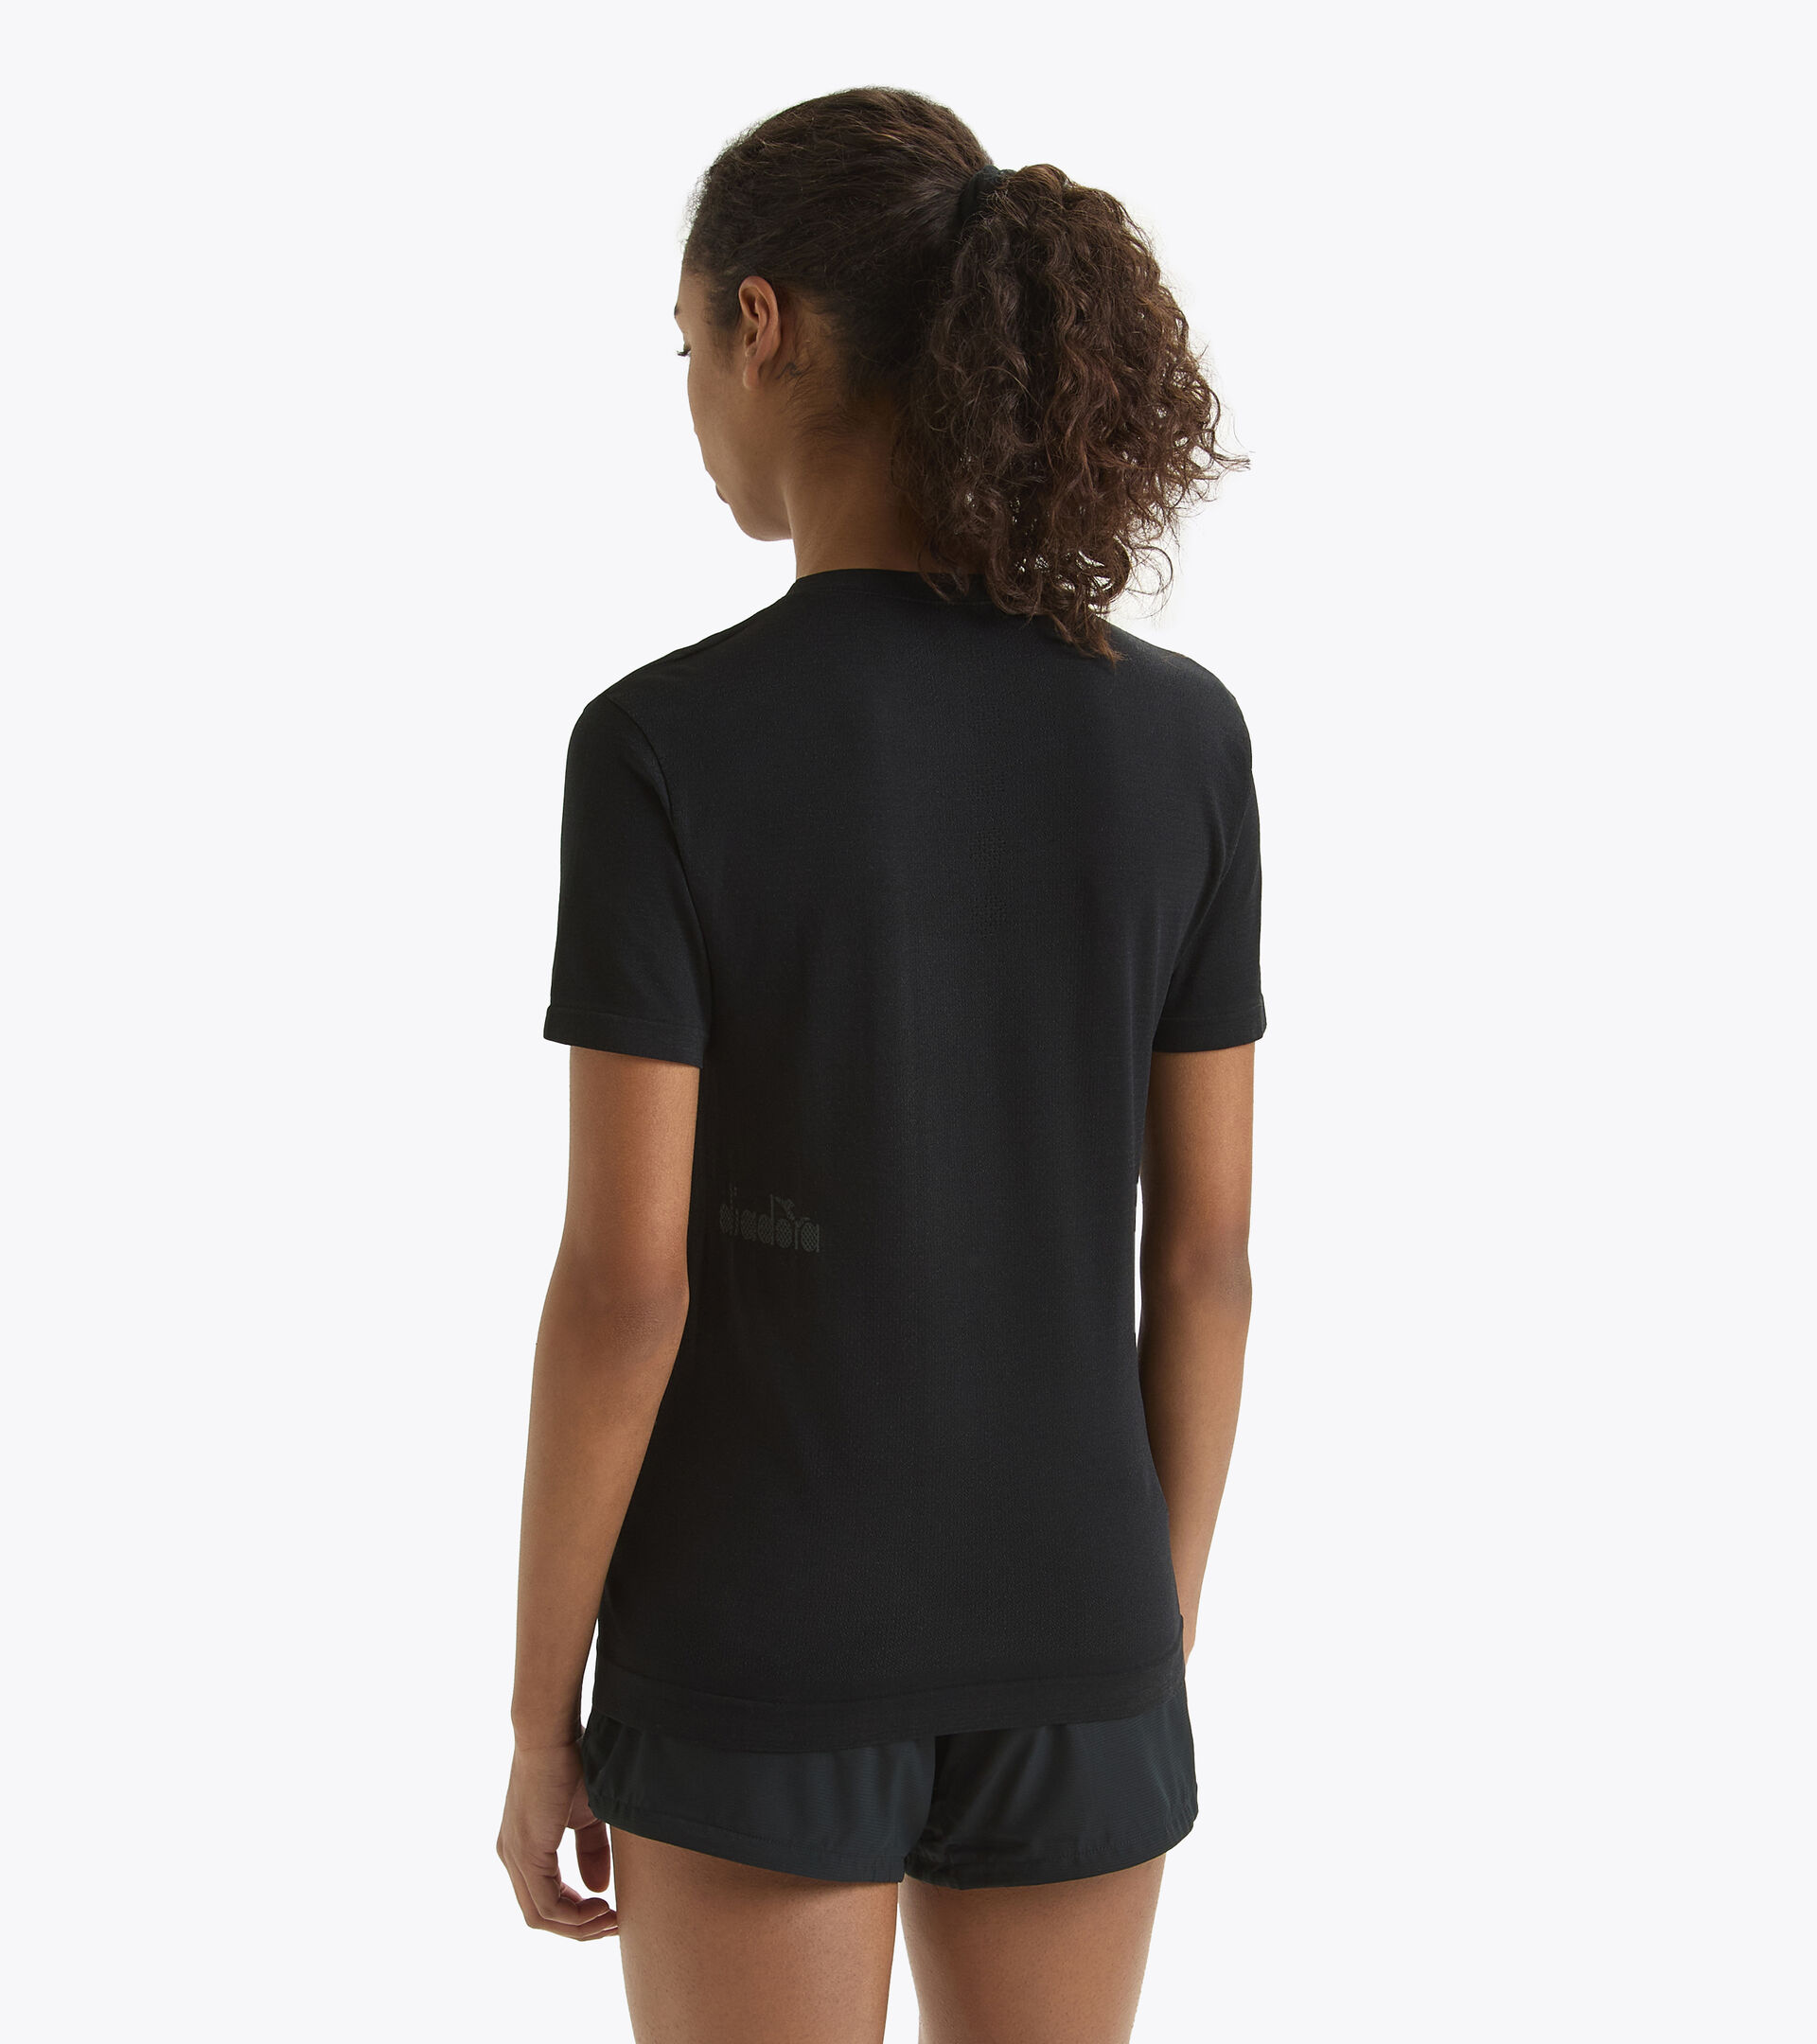 Lauf-T-Shirt ohne Nähte - made in Italy - Damen L. SS T-SHIRT SKIN FRIENDLY SCHWARZ - Diadora